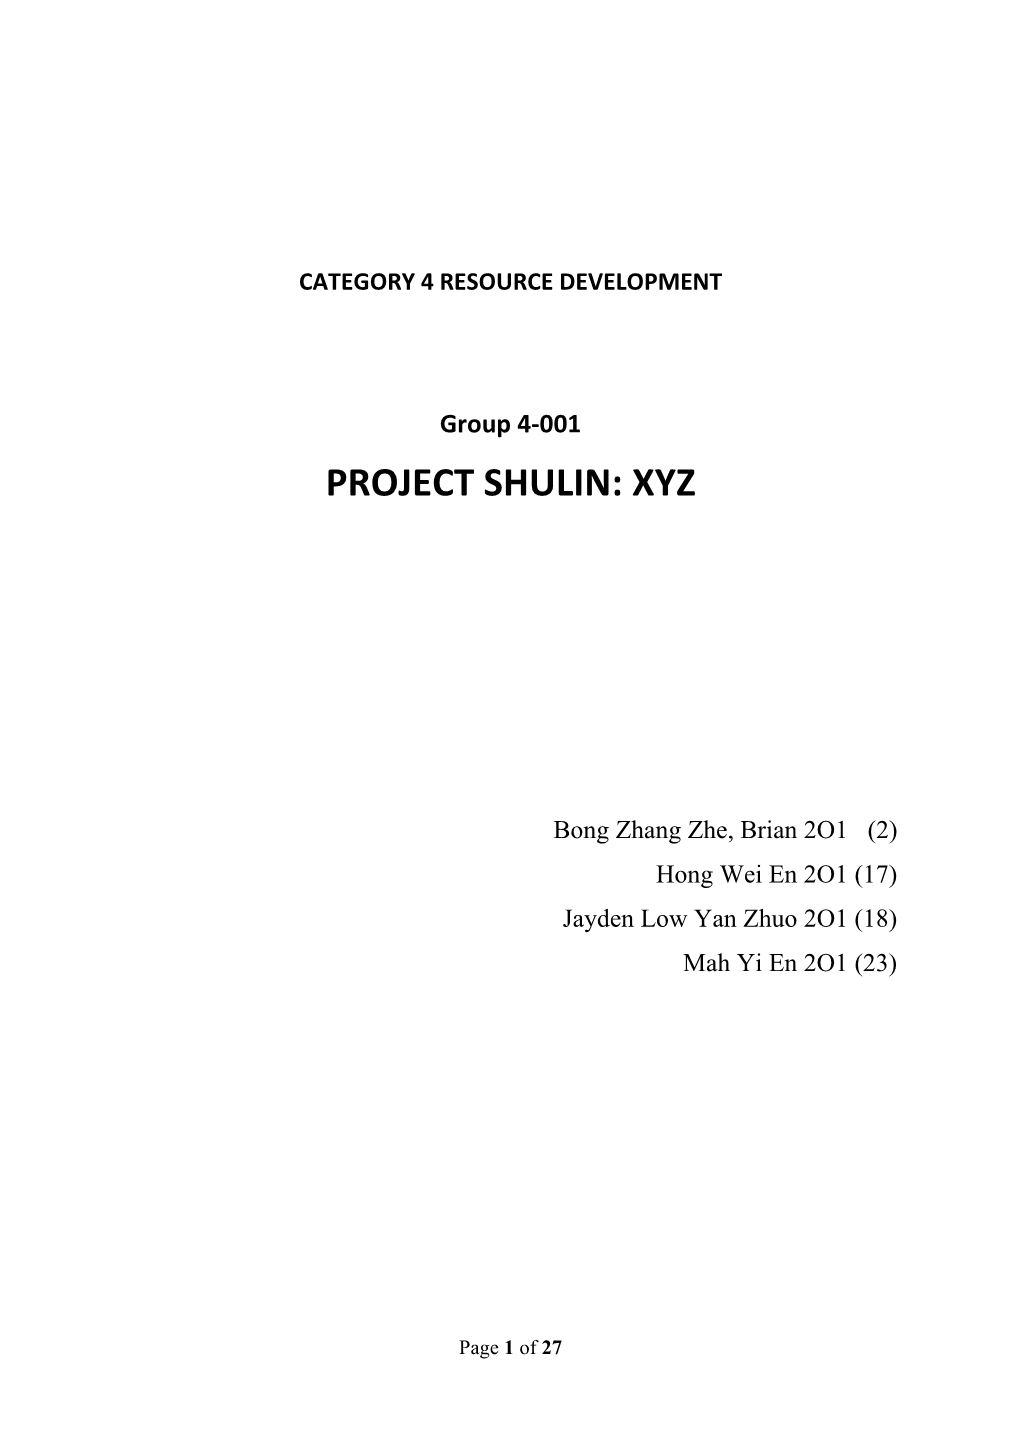 4-001 Project Shulin: Xyz